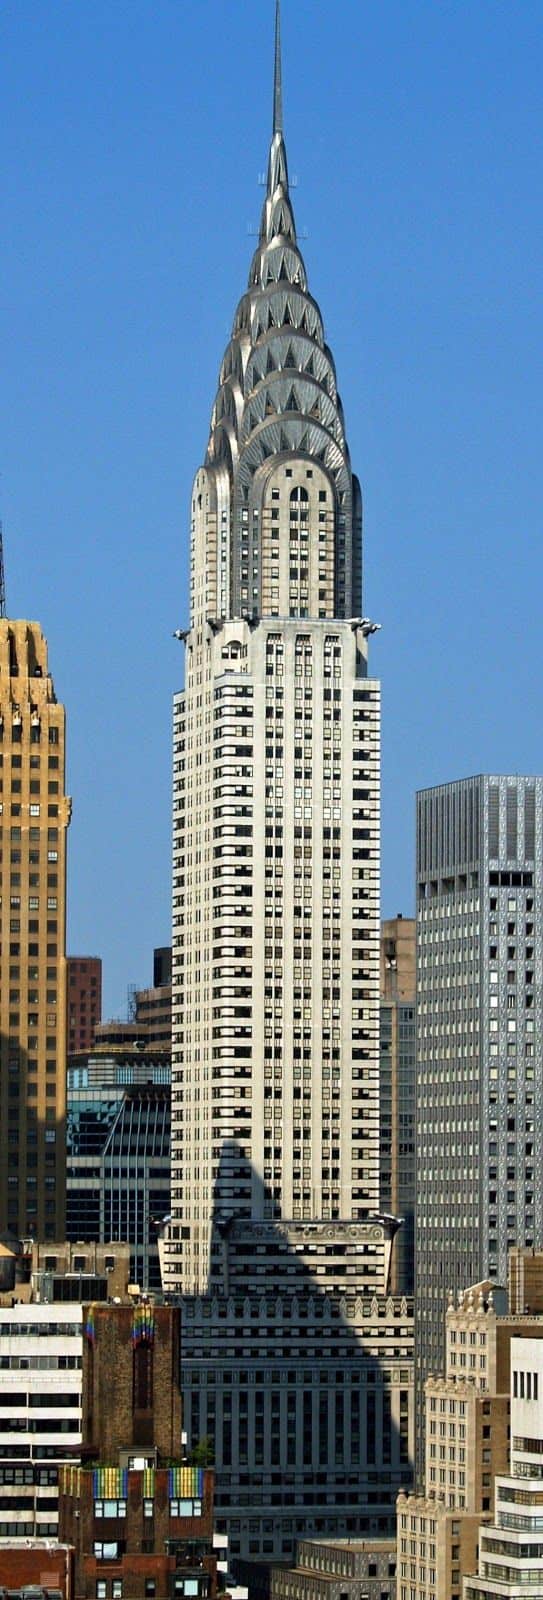 #1 The Chrysler building is a landmark in New York